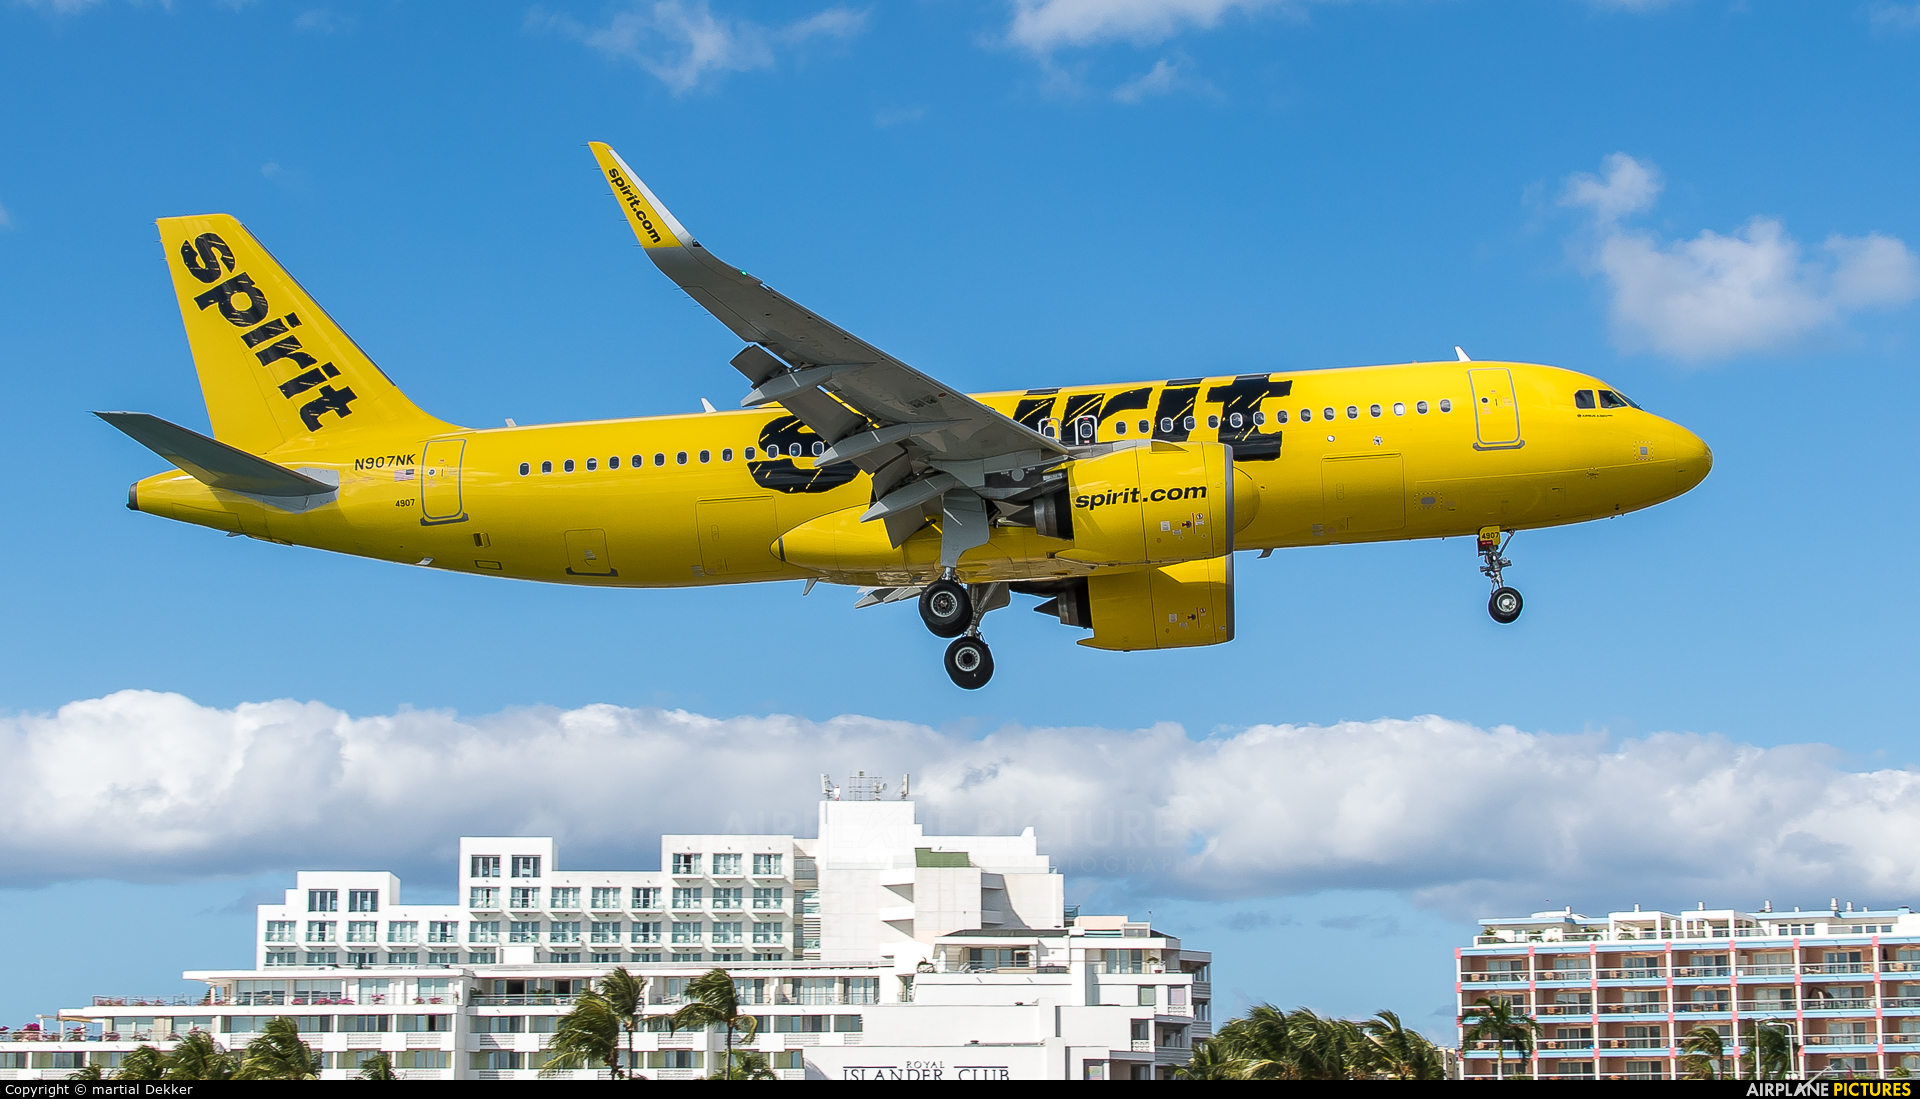 Spirit Airlines N907NK aircraft at Sint Maarten - Princess Juliana Intl